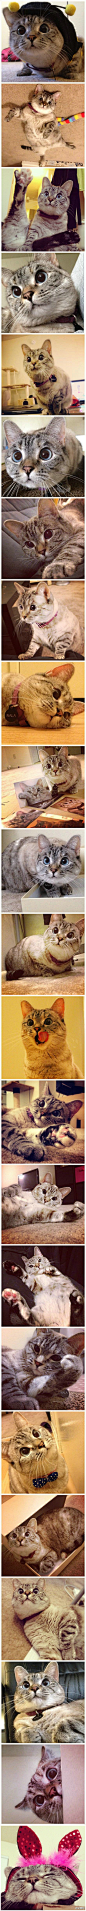 instagram爆红的喵星人Nala，是一只对眼猫，五个月大的时候被主人领养，凭借喜感的外表、超萌的姿态、谐星的潜质，迷倒众生！治愈到你了没？